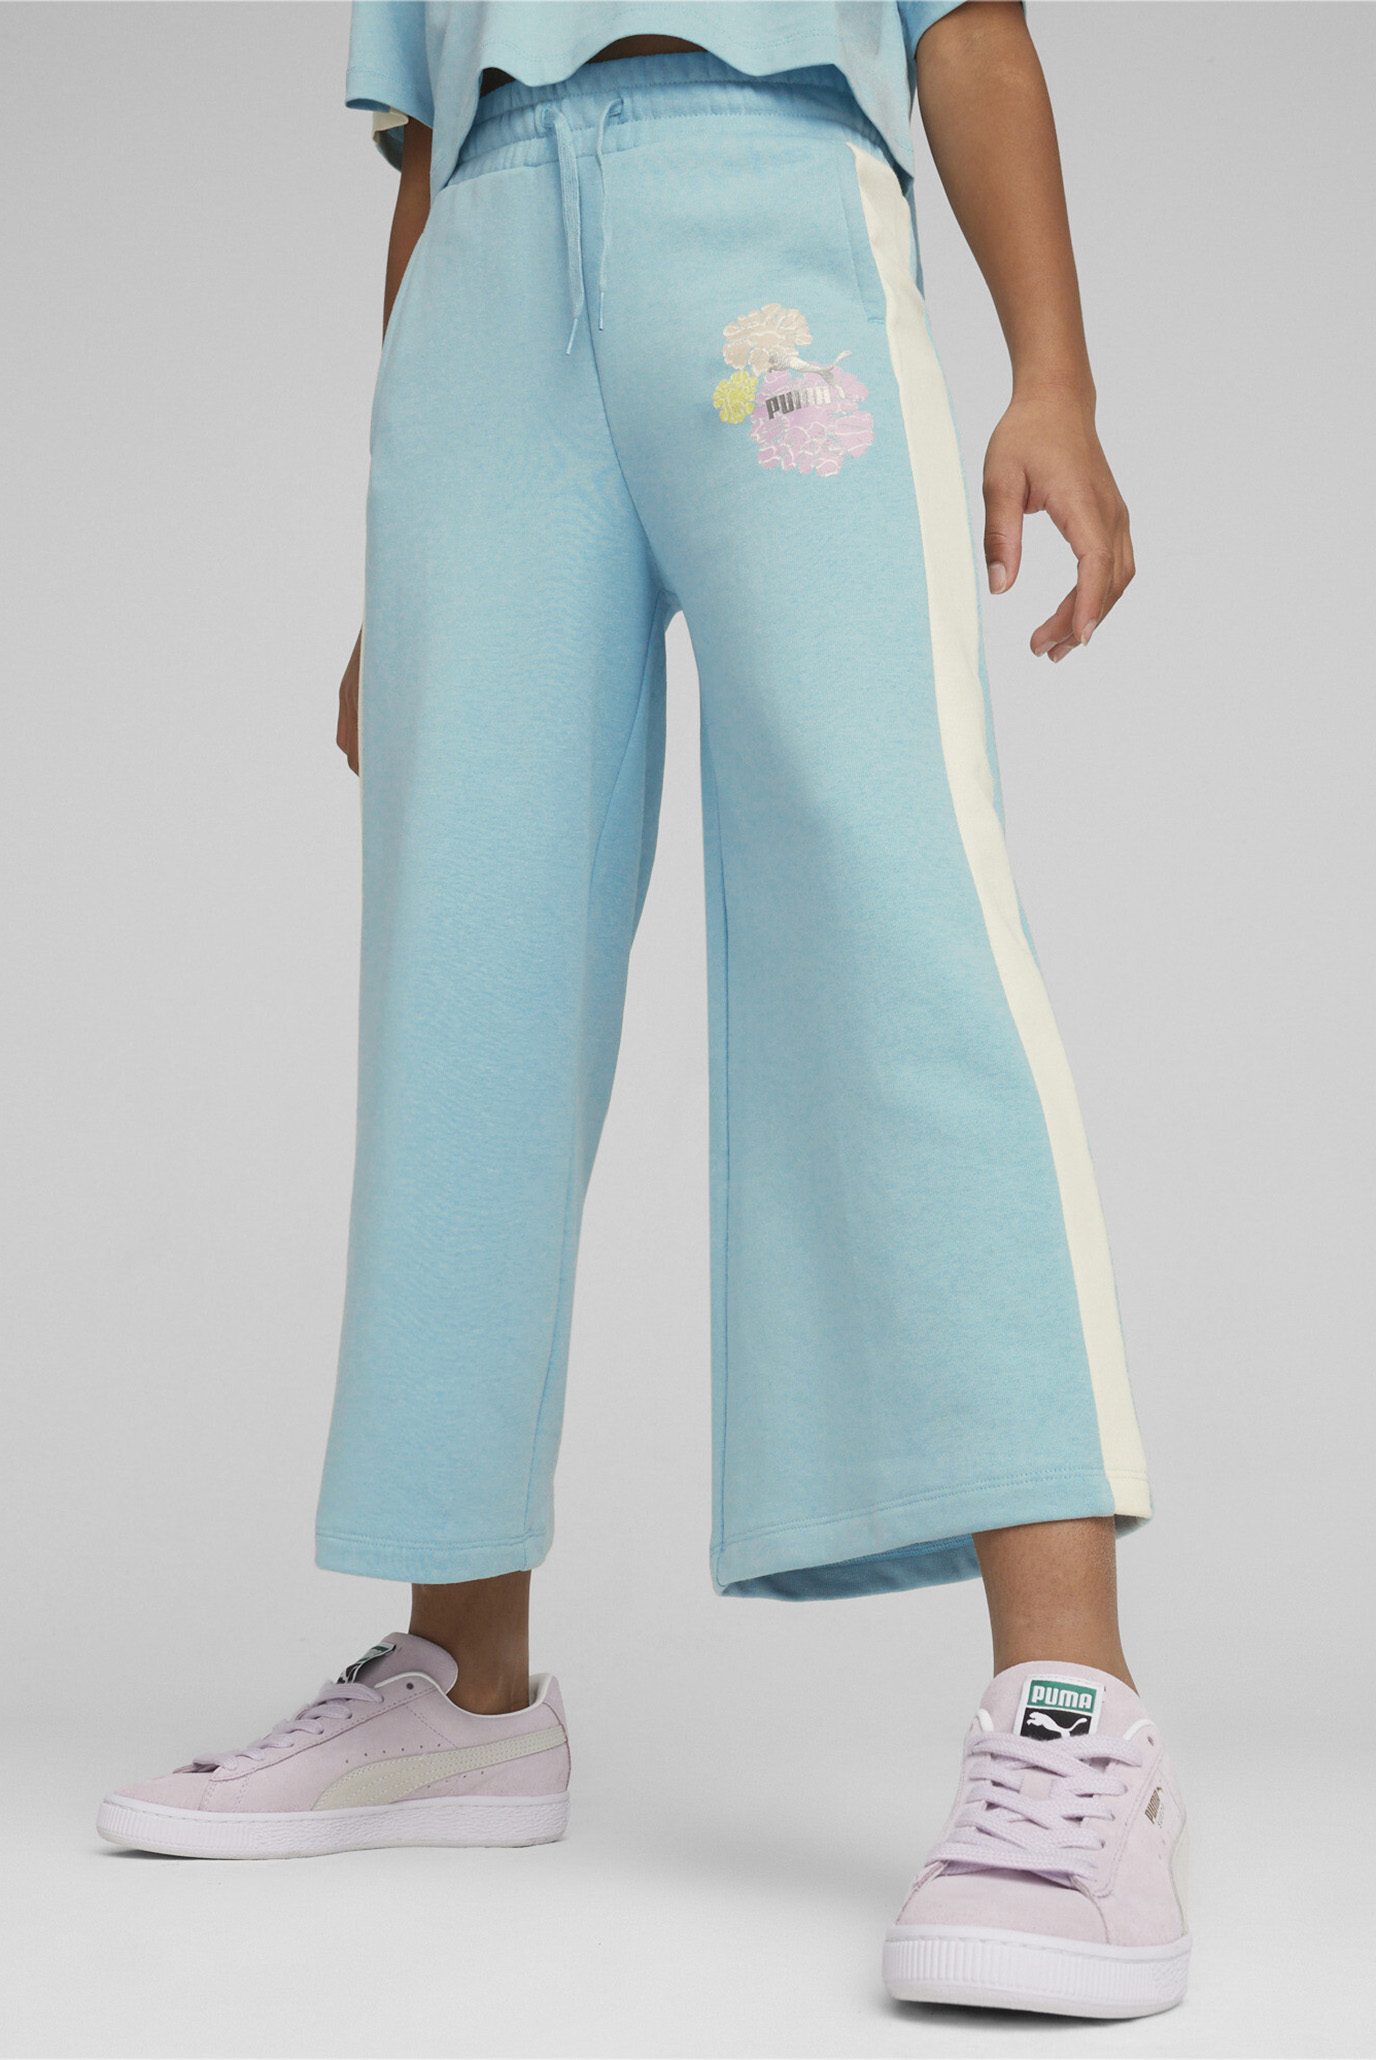 Детские бирюзовые спортивные брюки T7 SNFLR Girls' 7/8 Sweatpants 1